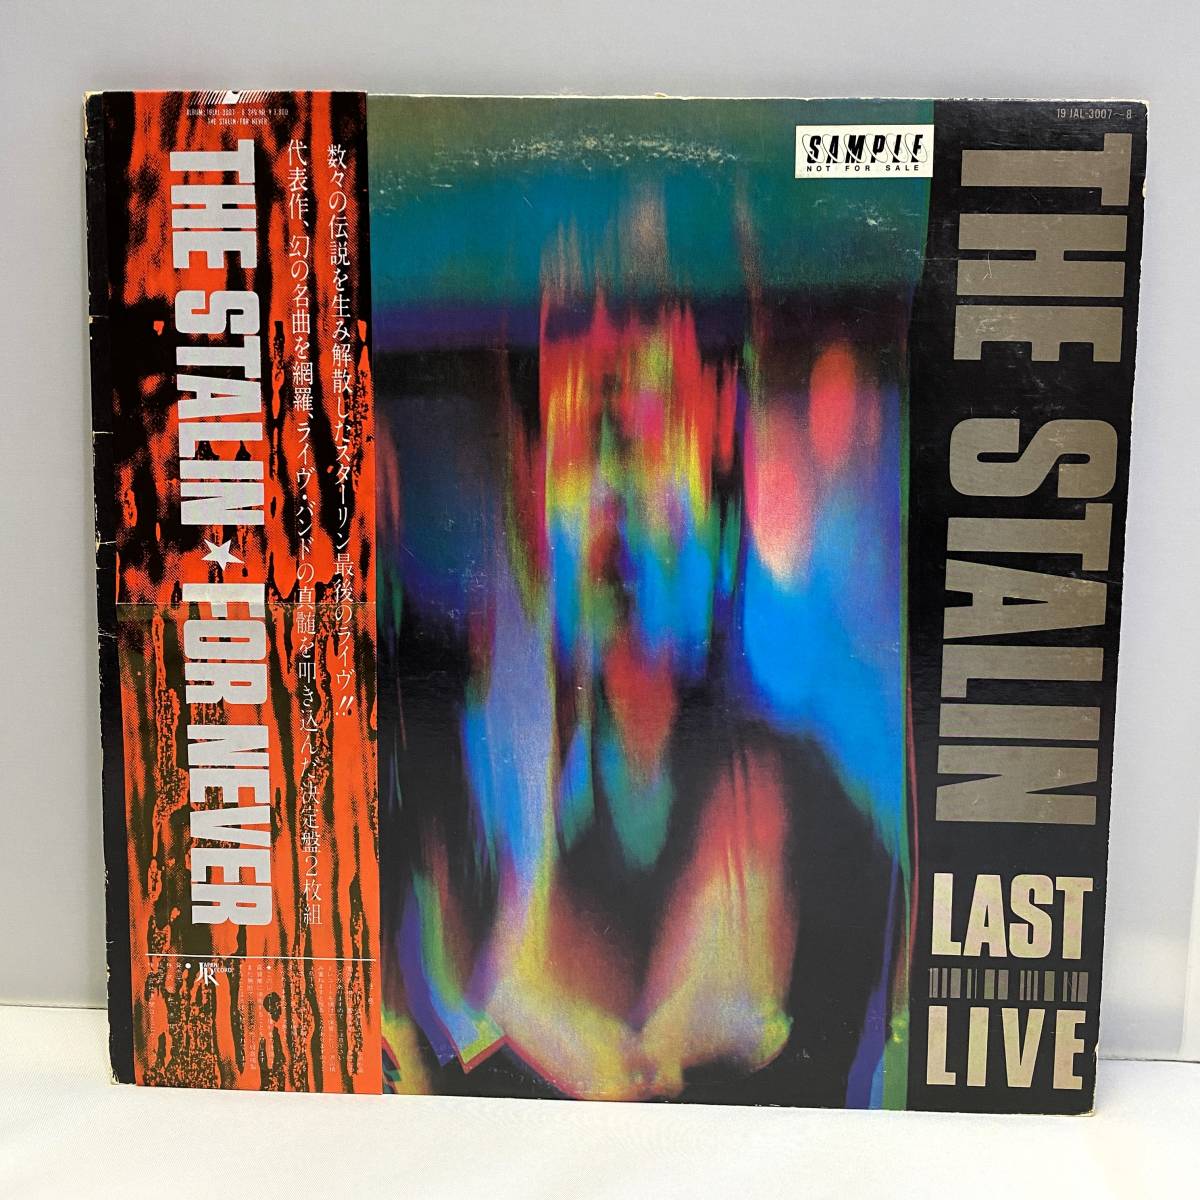 THE STALIN / ザ・スターリン / LAST LIVE / FOR NEVER / 見本盤 sample / 白レーベル / 帯・インサート・ポスター付きLP / 19JAL-3007_画像1